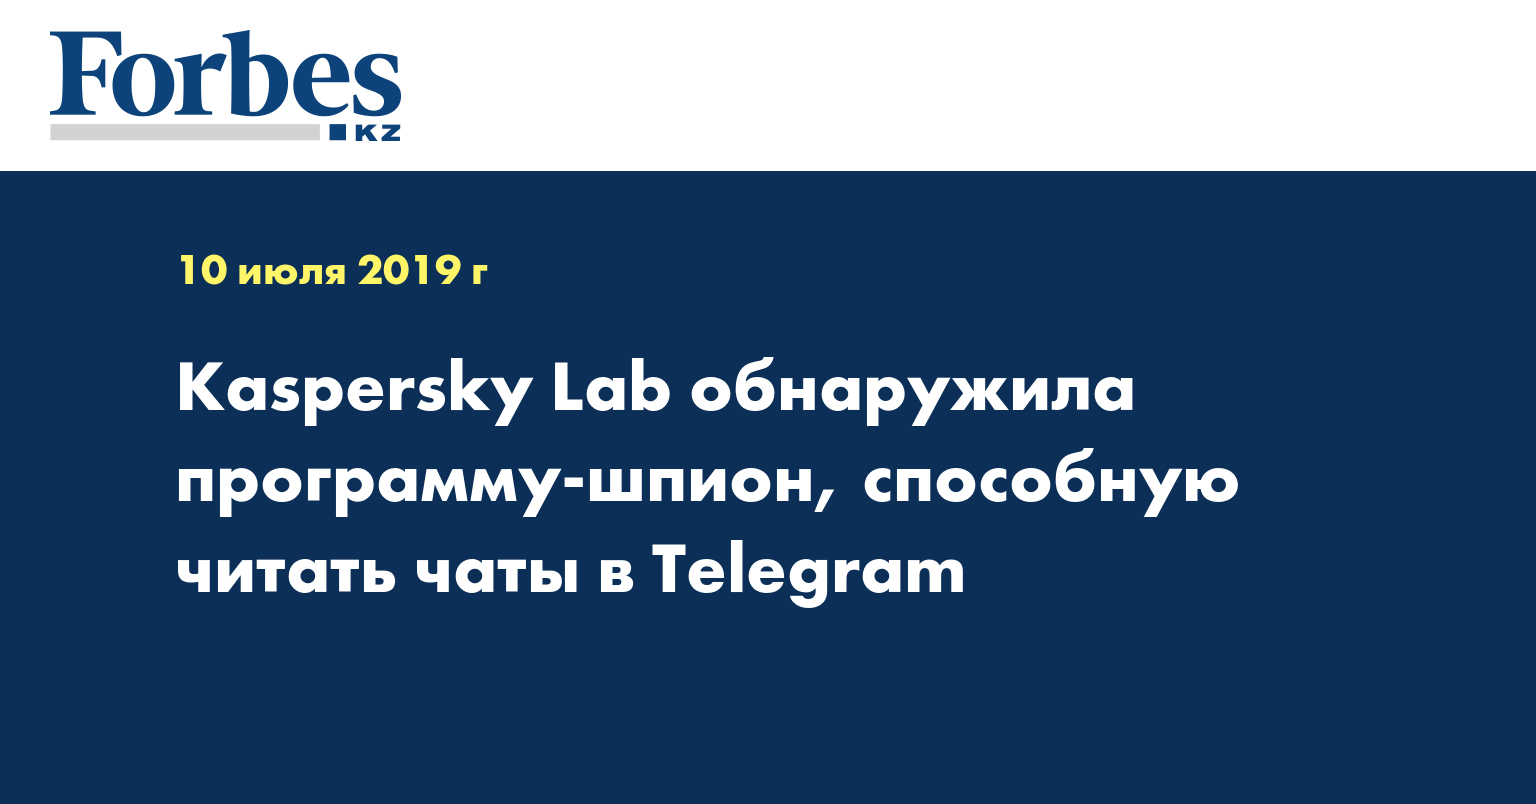 Kaspersky Lab обнаружила программу-шпион, способную читать чаты в Telegram